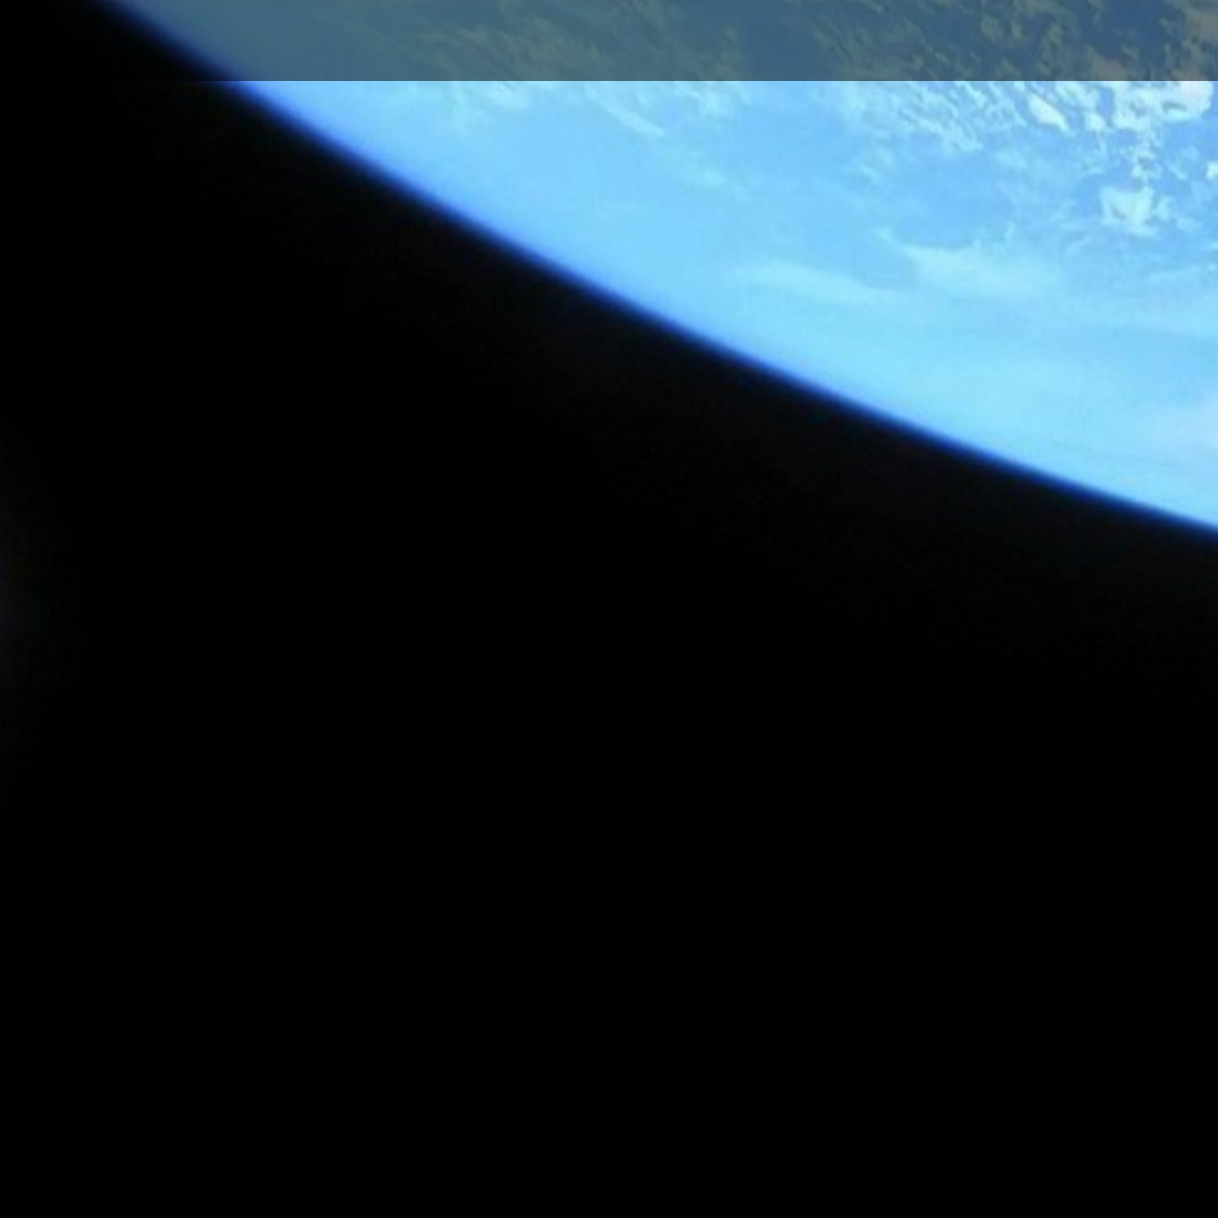  صورة من تلسكوب "جيمس ويب" كادت تبكي أحد علماء "ناسا"